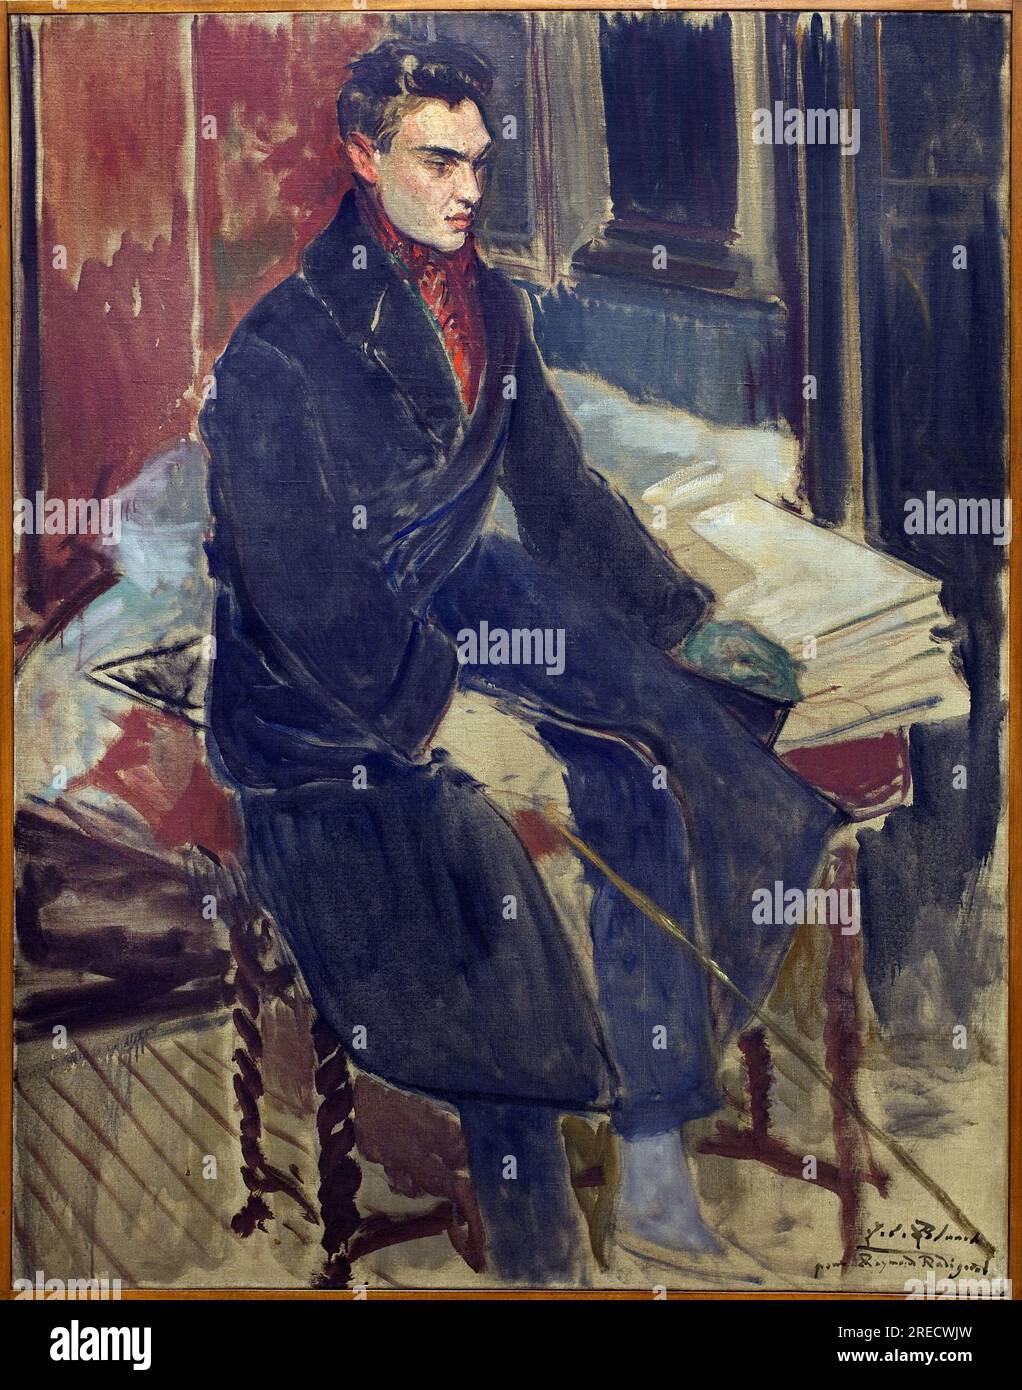 Etude pour le portrait en pied de Raymond Radiguet (1903-1923). Peinture de Jacques Emile Blanche (1861-1942), huile sur toile, art francais 20e siecle. Musée des beaux-arts de Rouen. Banque D'Images